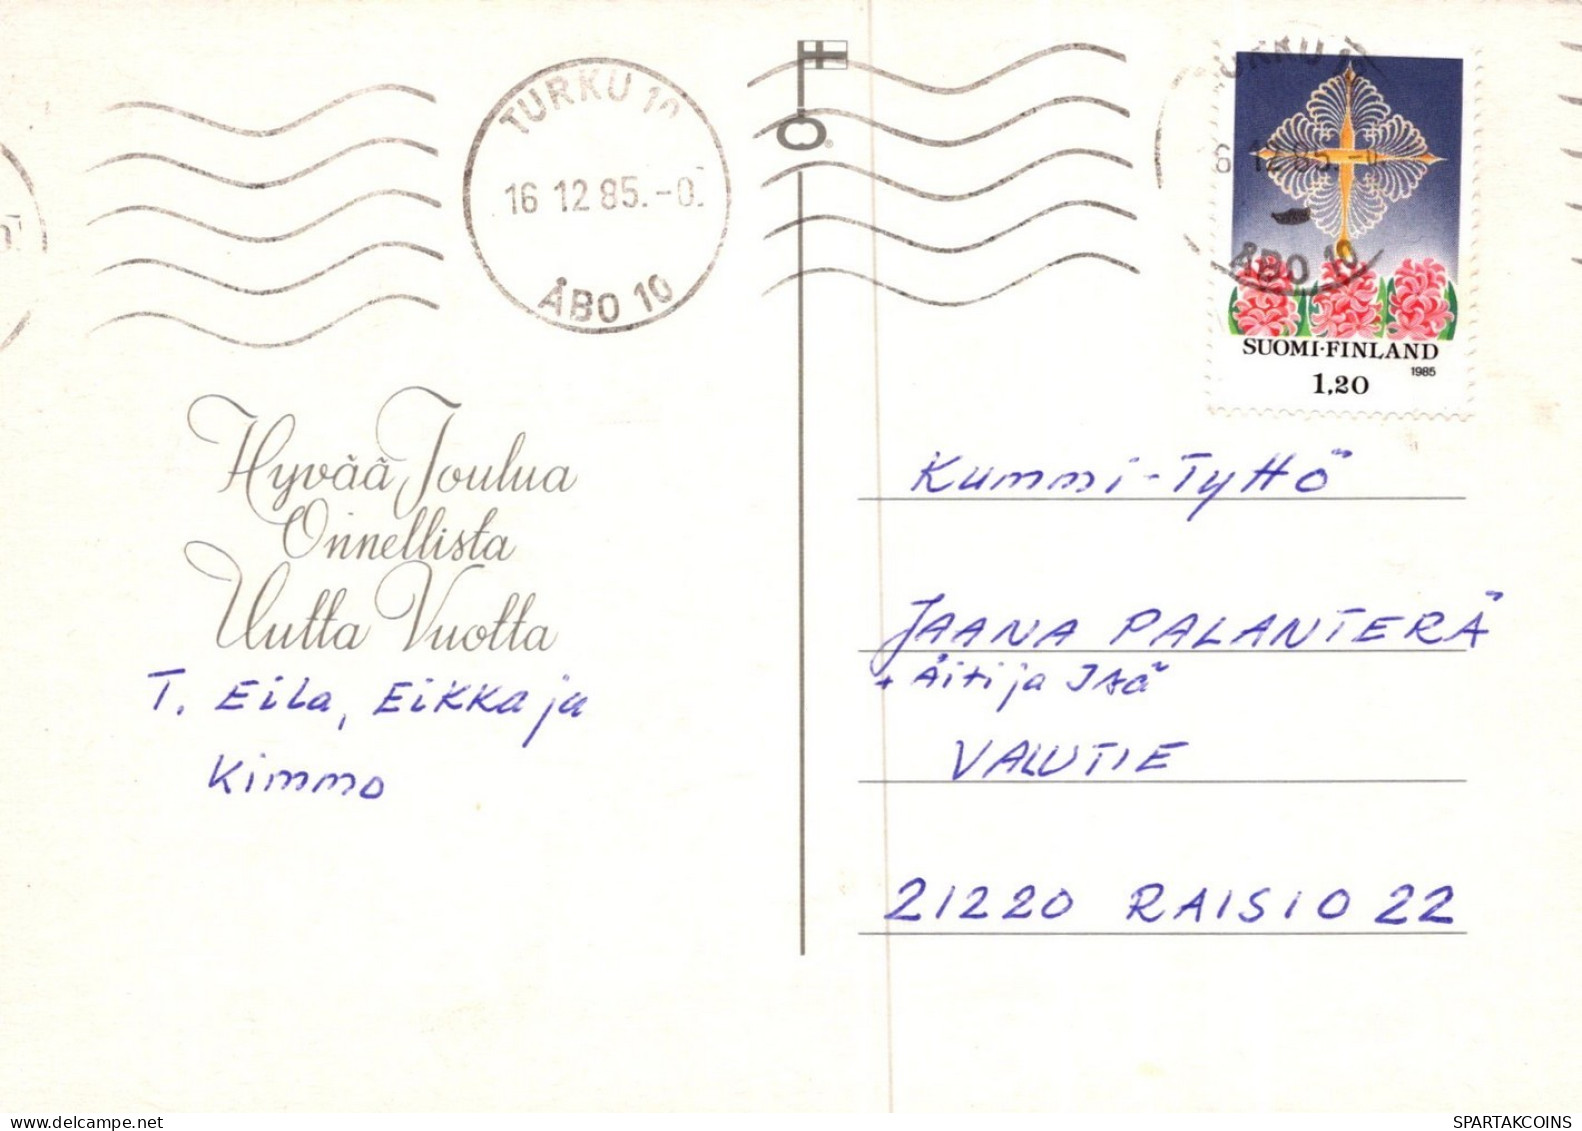 WEIHNACHTSMANN SANTA CLAUS WEIHNACHTSFERIEN Vintage Postkarte CPSM #PAK202.DE - Santa Claus